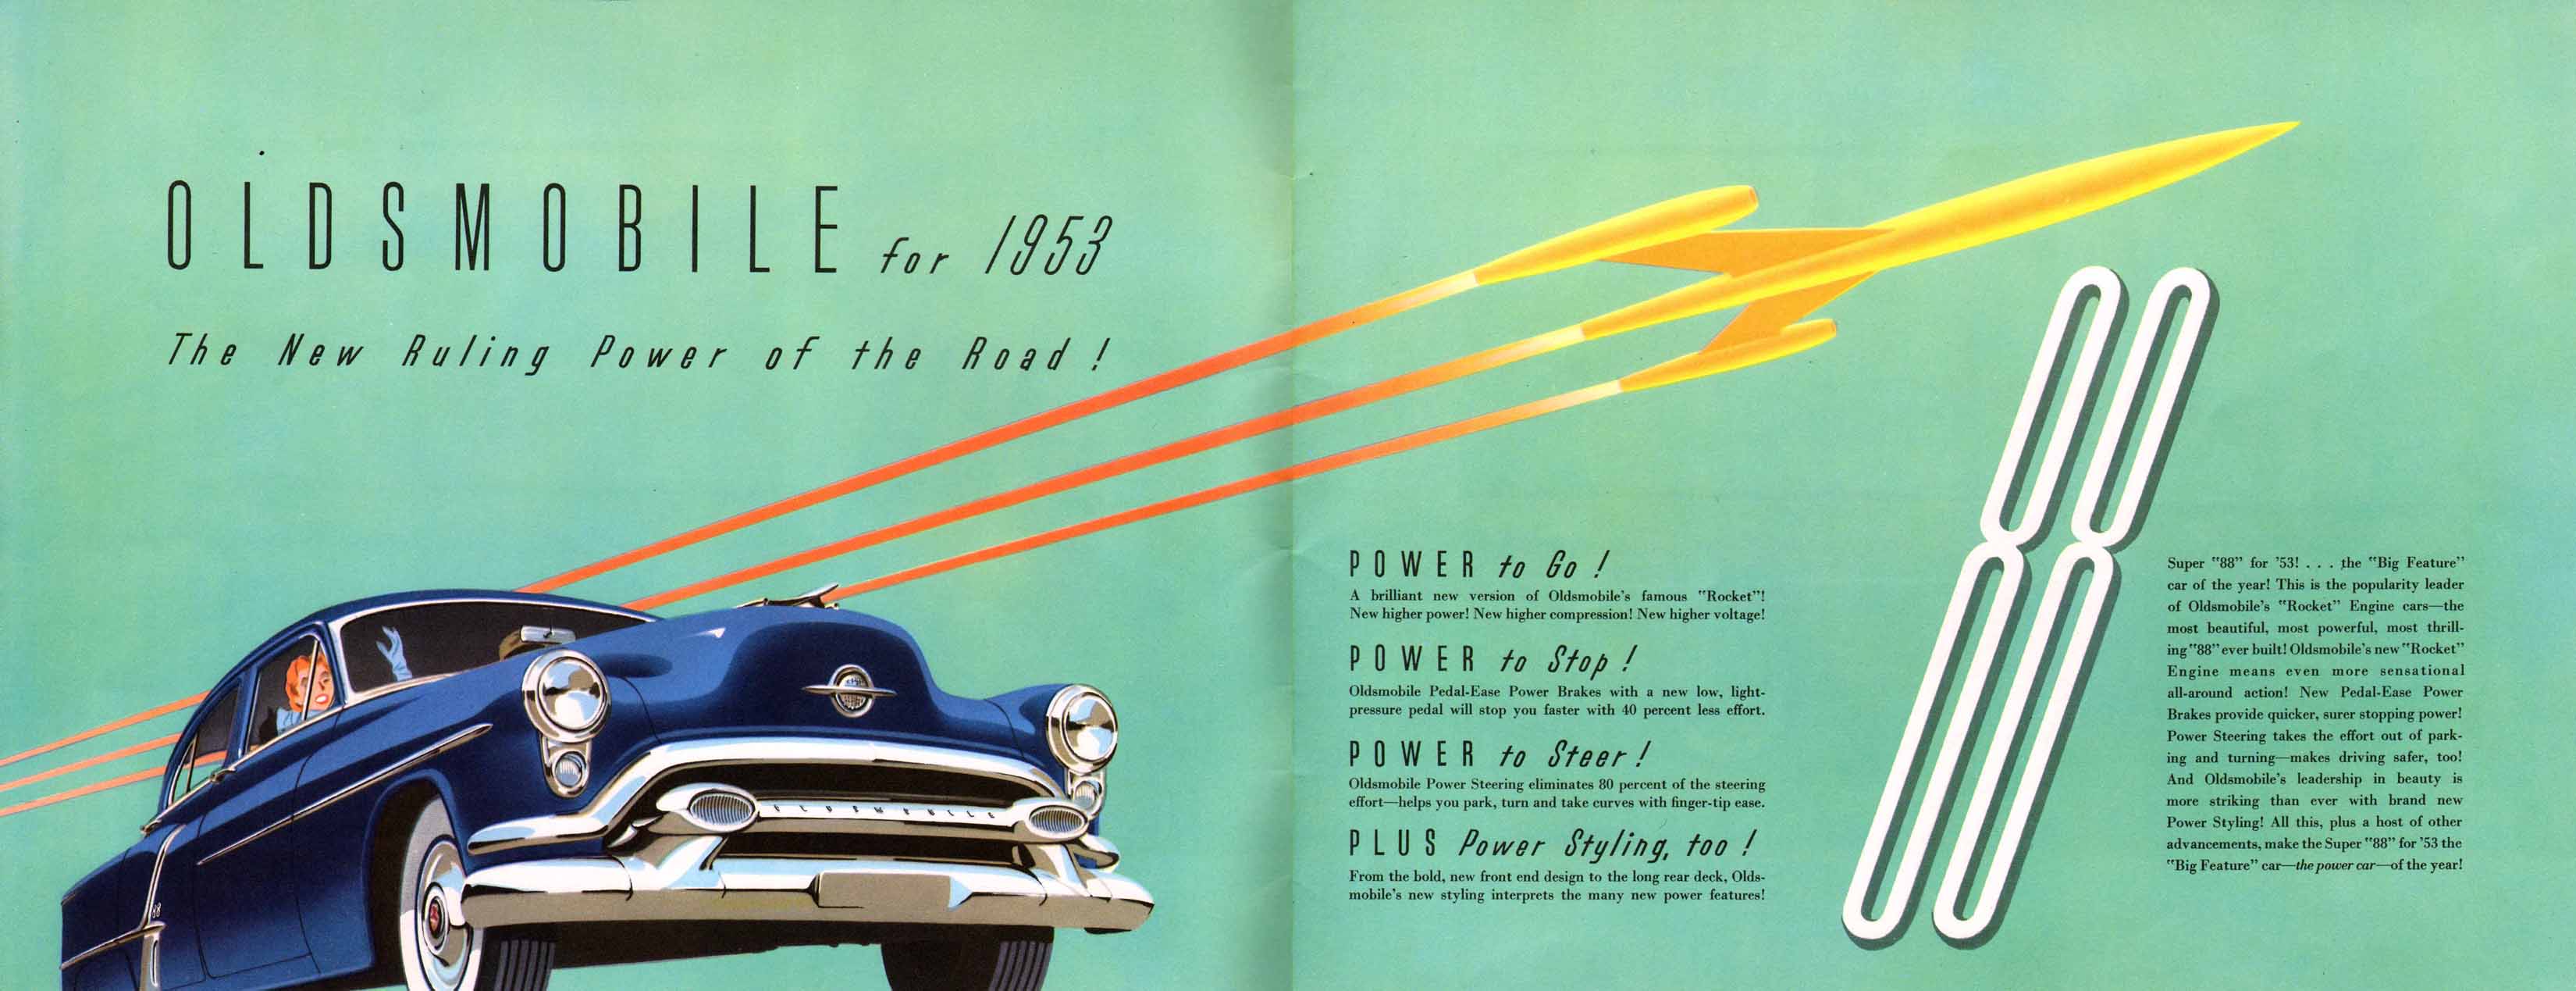 1953_Oldsmobile-02-03